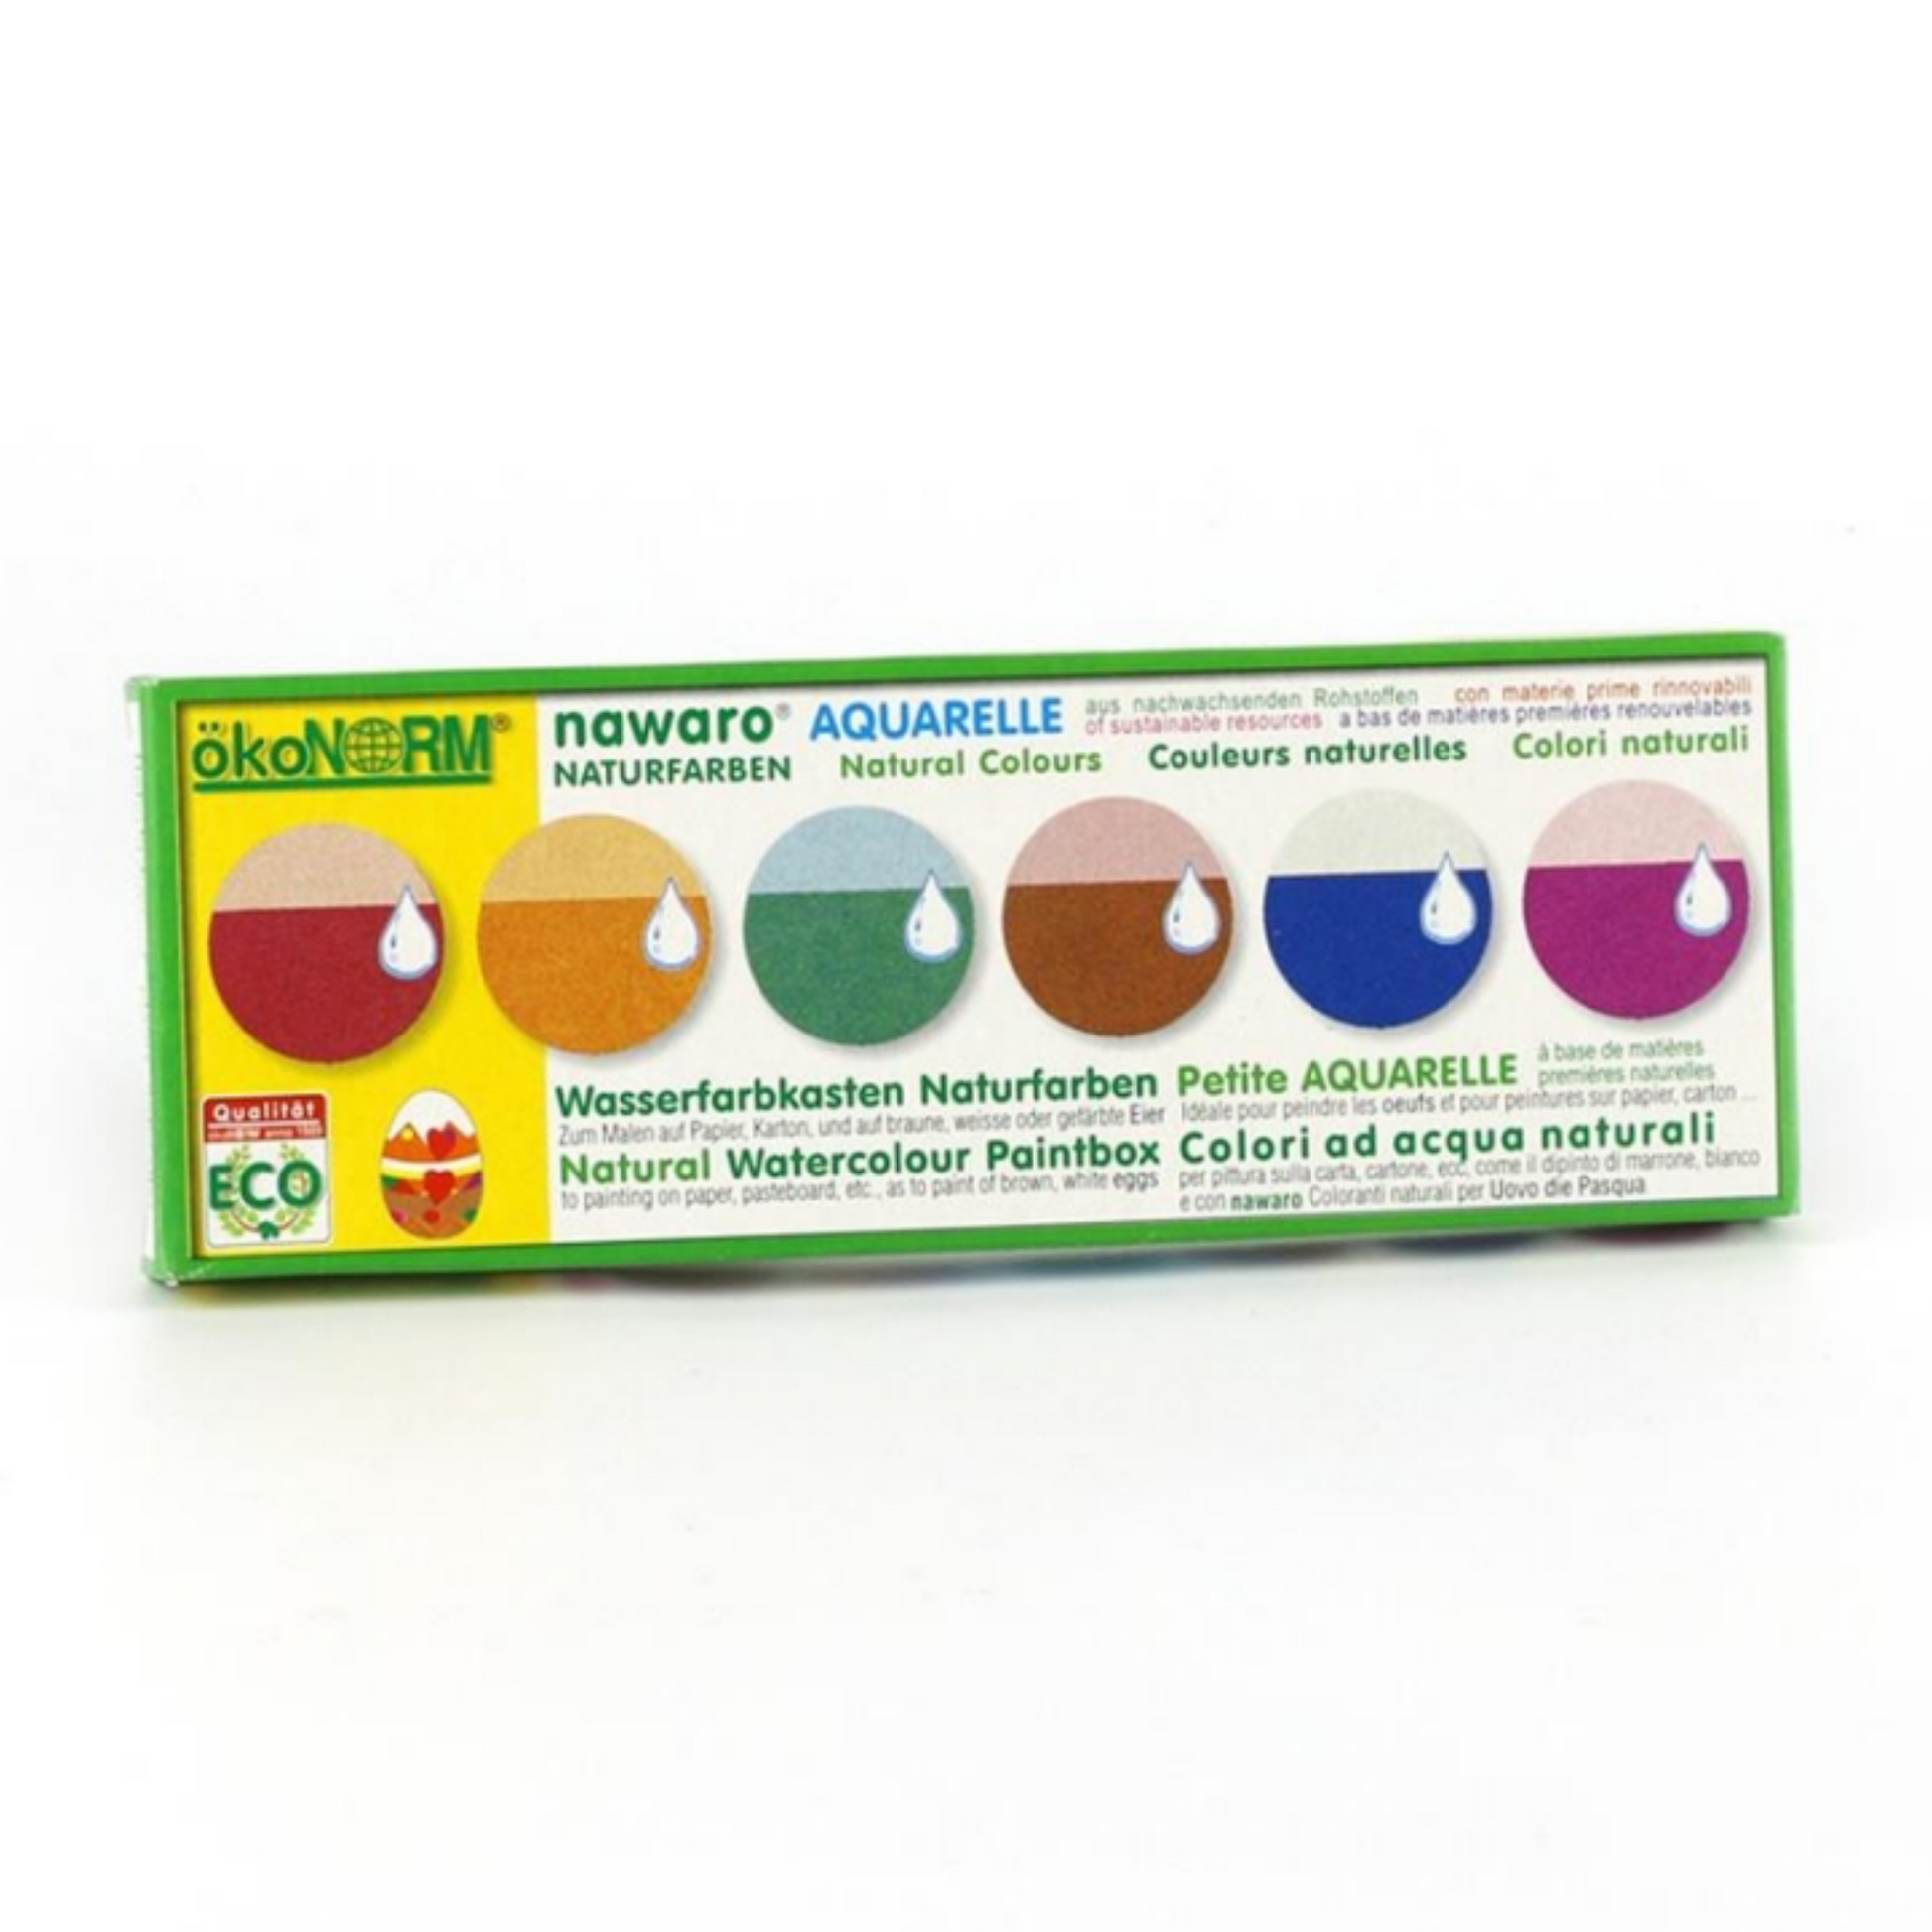 okoNORM Natural Watercolour Paints | Vegan – Plant-Based | 6 Vibrant Colours | Box | BeoVERDE.ie